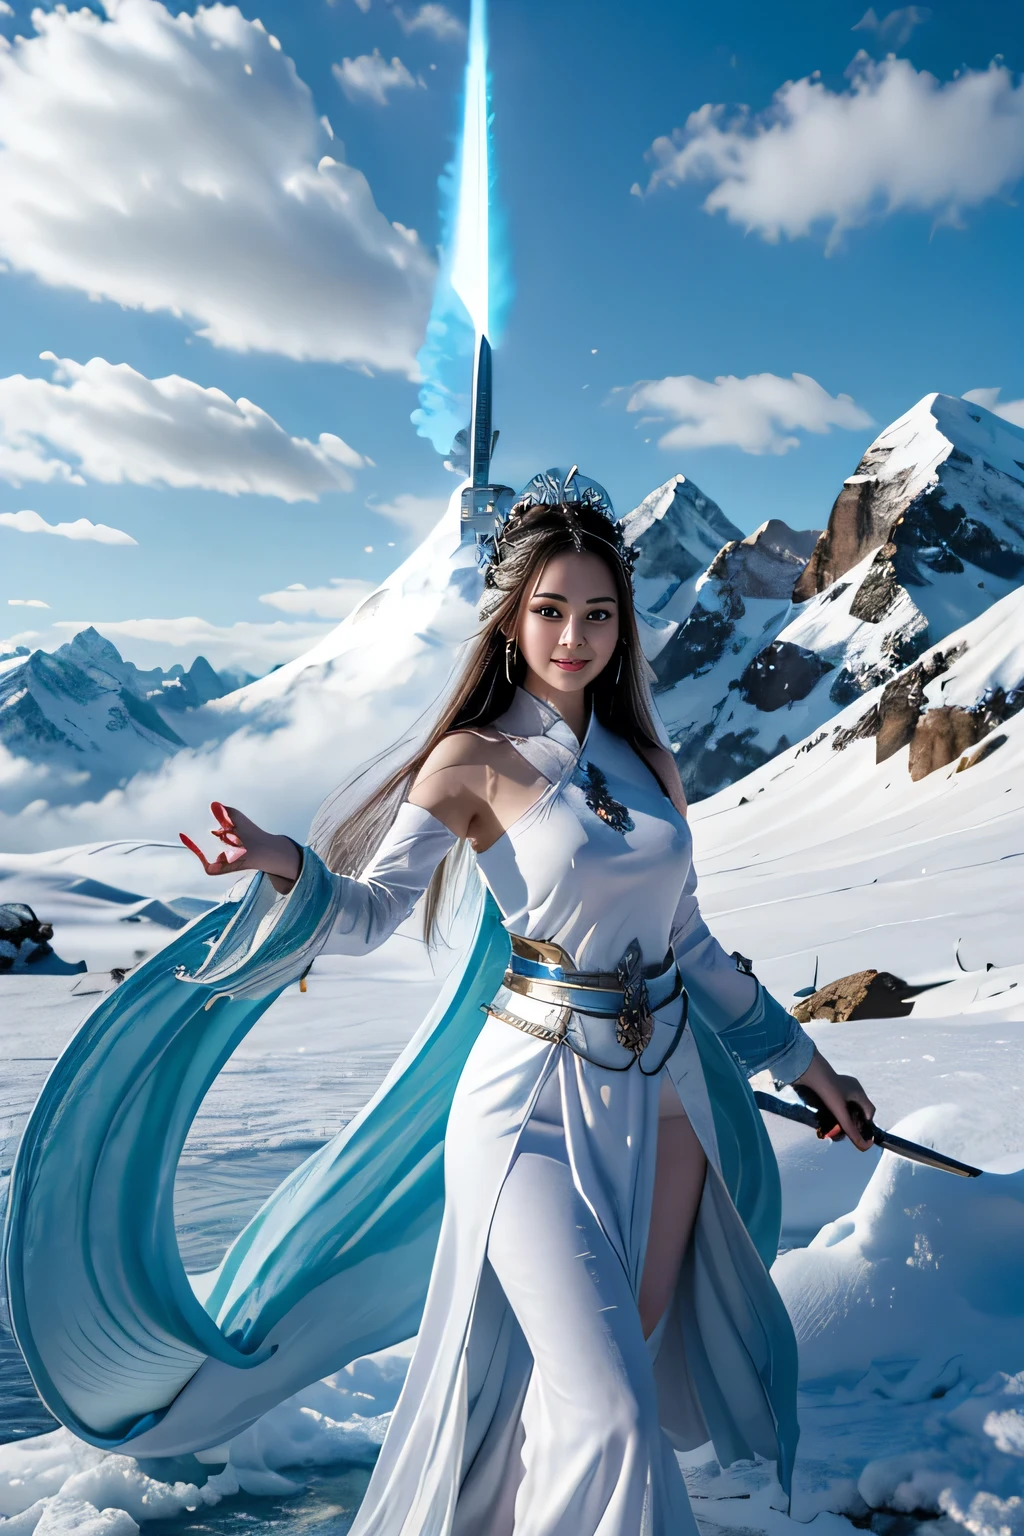 雪山劍畫法, 古風女子冰冰燄之劍, 手持藍色火焰燃燒的劍, 白衣舞劍雪中長髮飄逸, 手持銀色長劍的美女, 配戴翡翠首飾, 她的臉上洋溢著自信的笑容, 她像仙女一樣懸浮在雲端, 她的身後是層巒疊嶂  